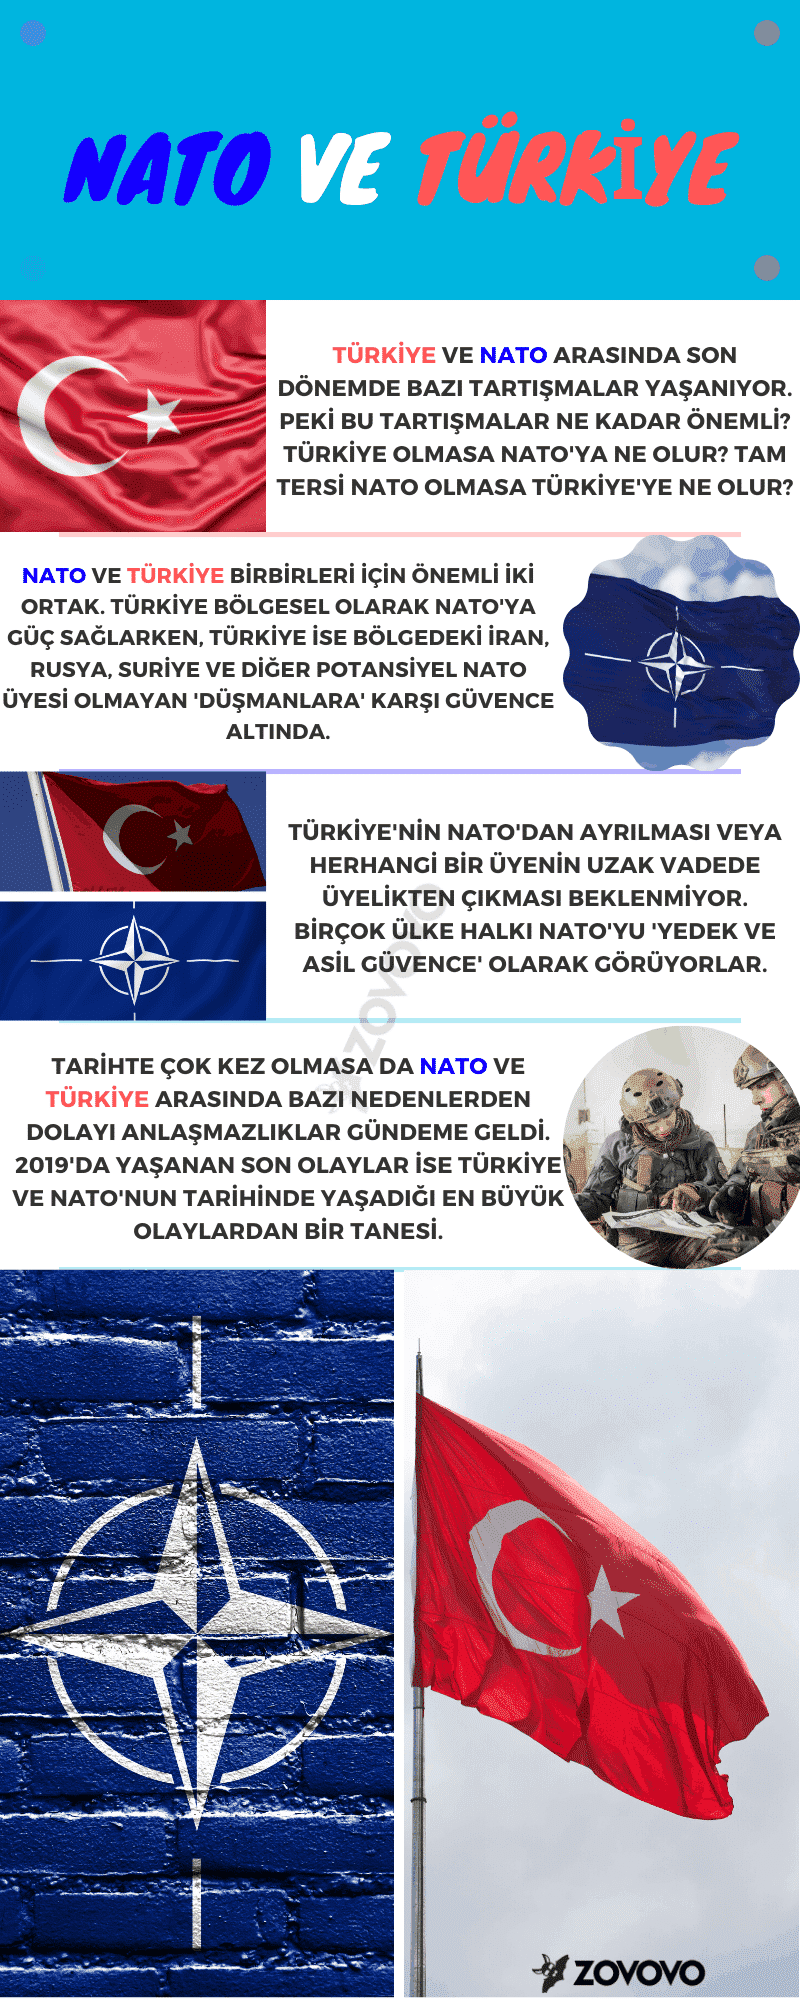 NATO Ve Türkiye 2019 – İnfografik